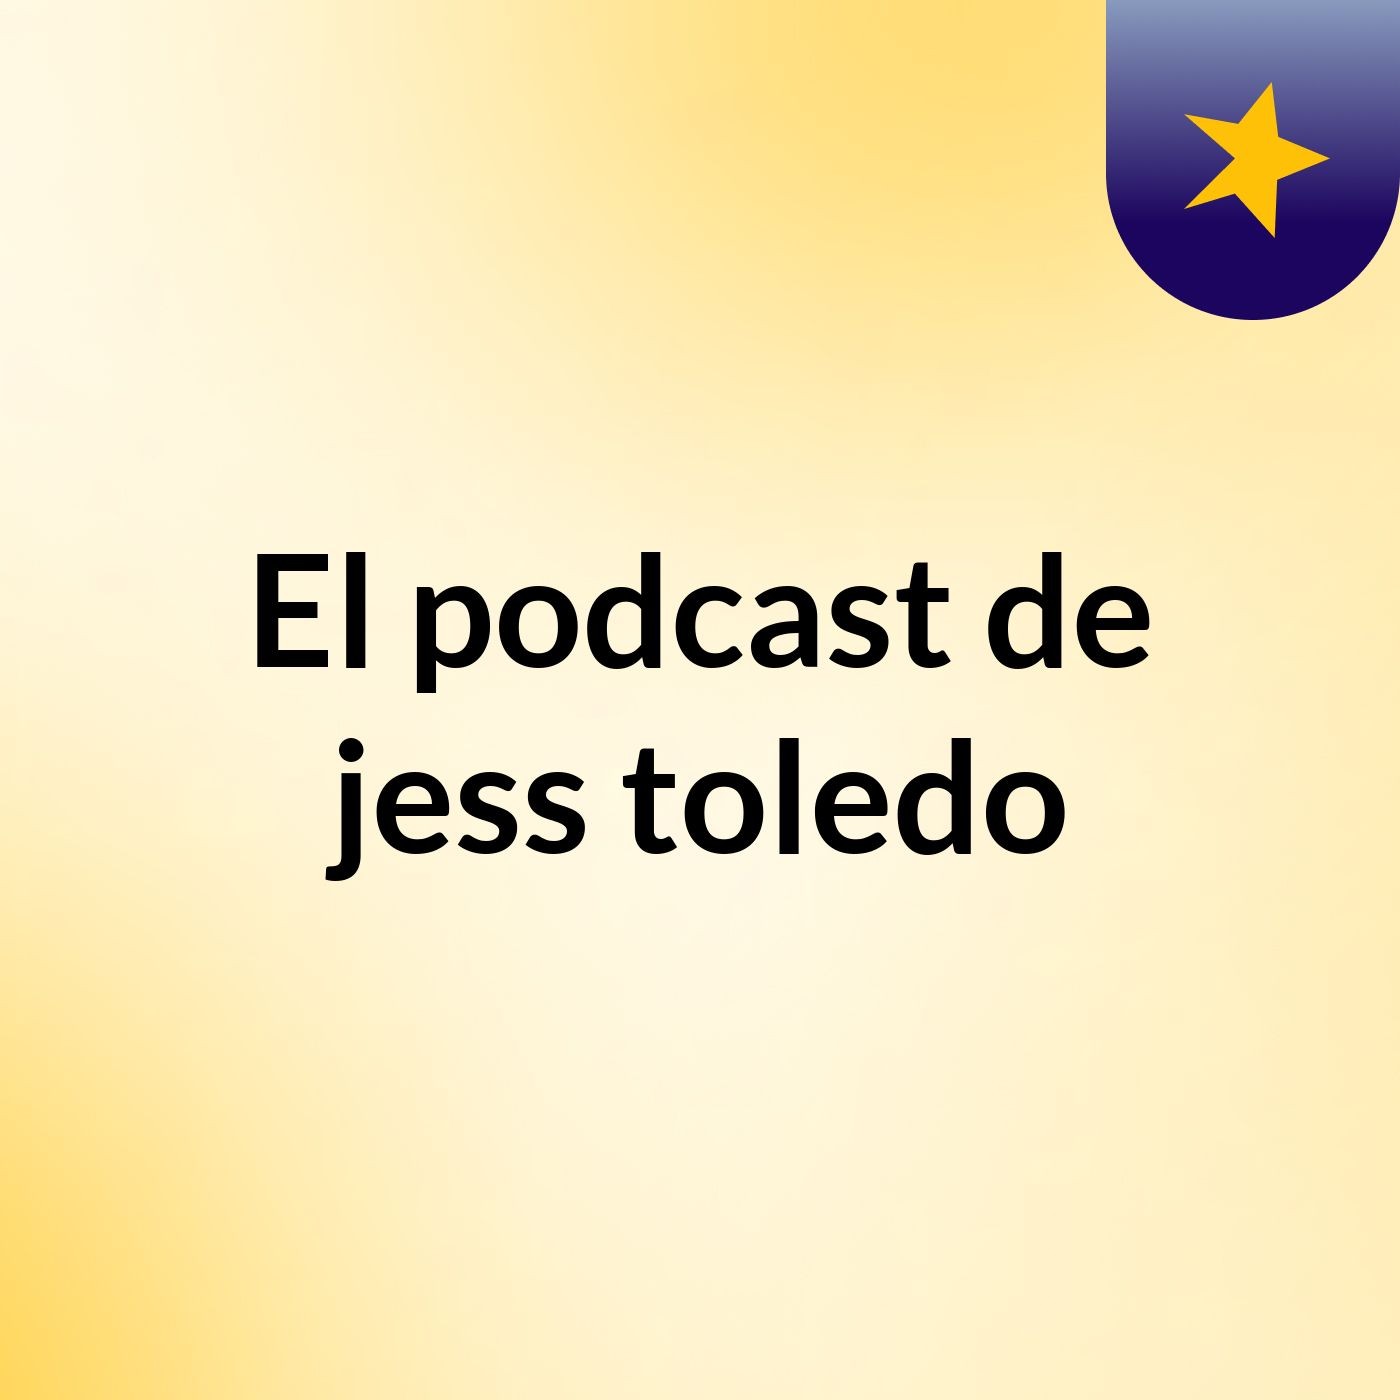 El podcast de jess toledo